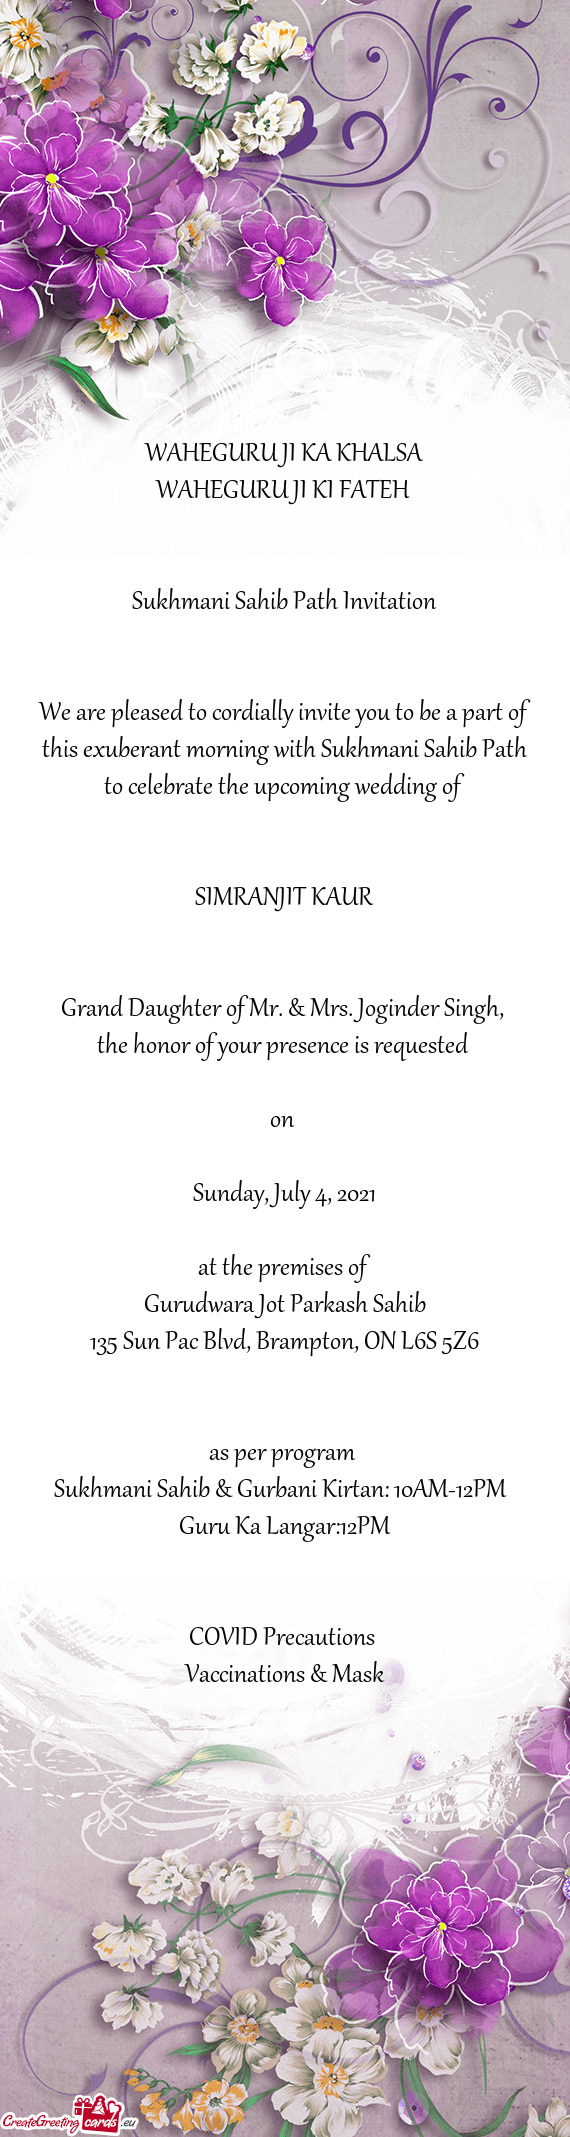 Grand Daughter of Mr. & Mrs. Joginder Singh